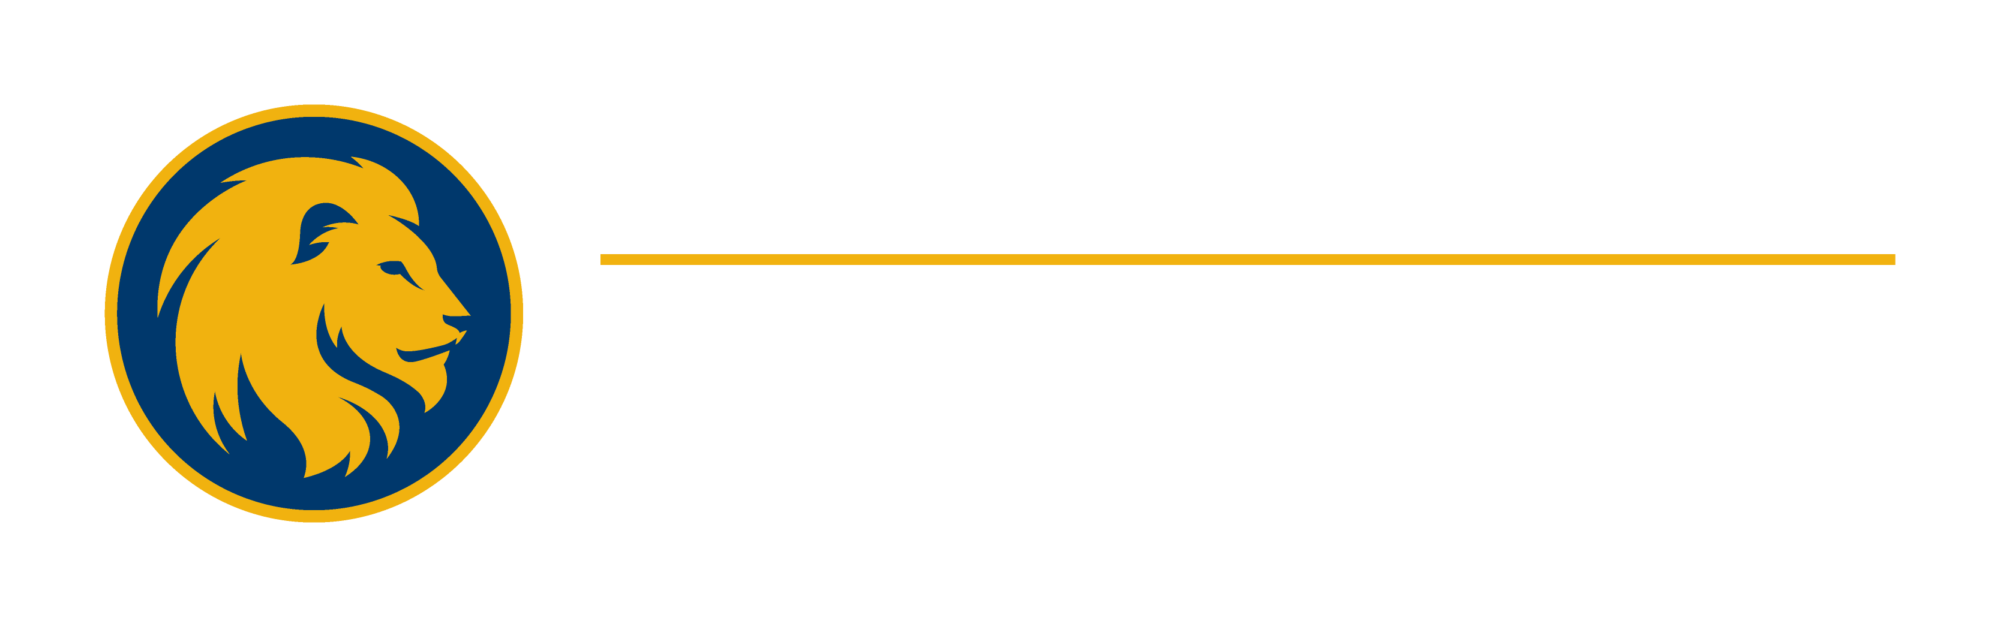 Texas A&M University-Commerce logo.